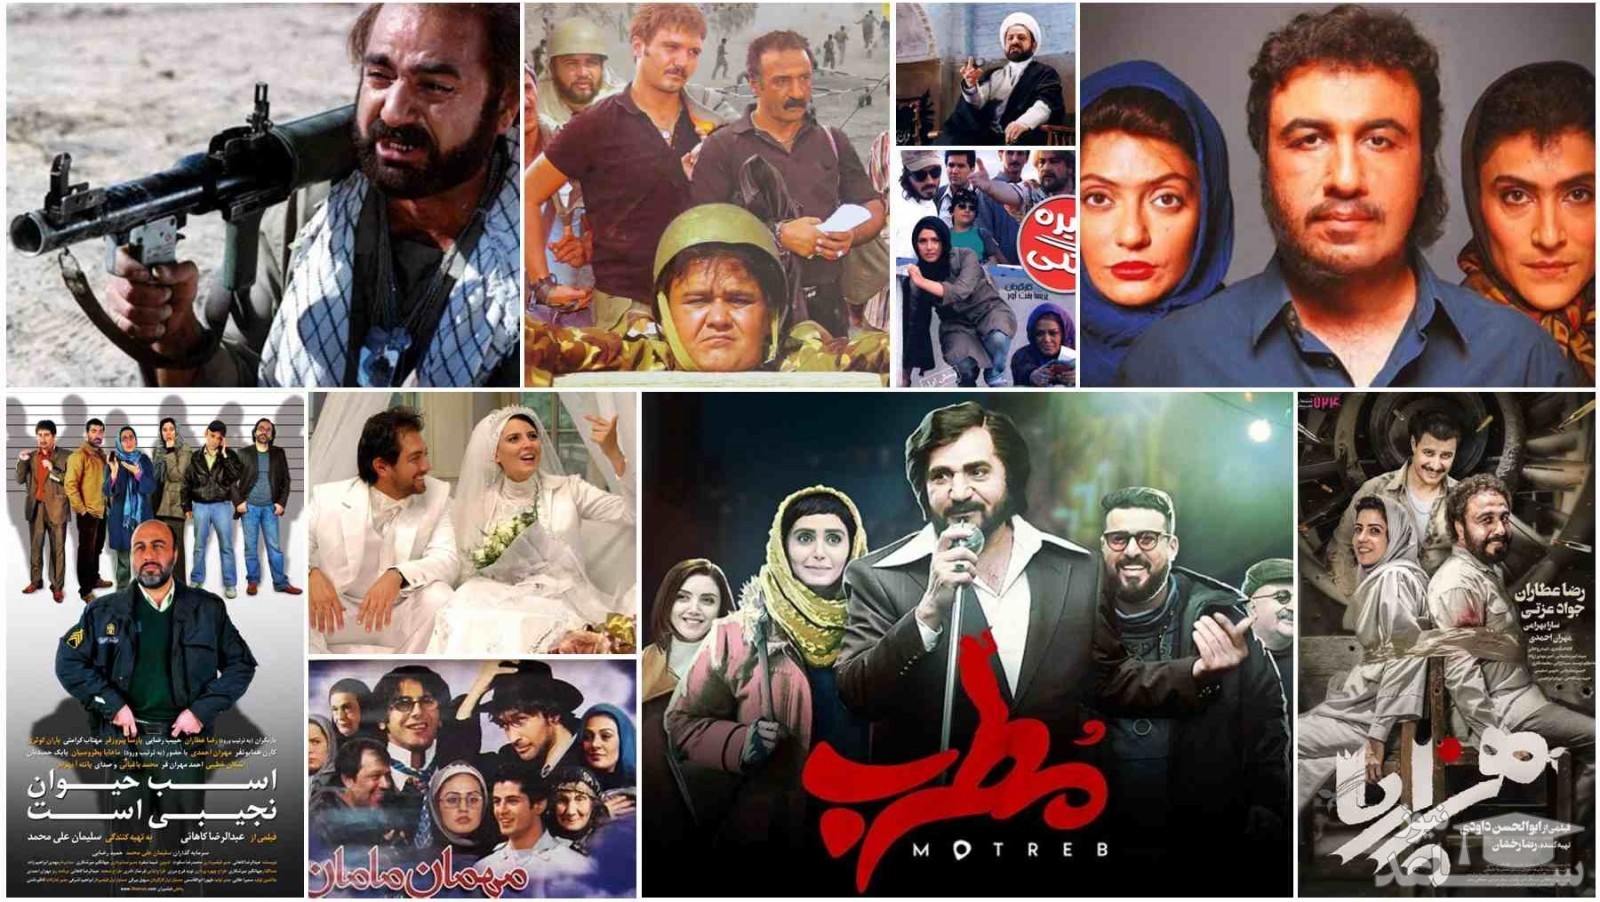 (فیلم) آغاز نبرد با ابتذال در سینمای ایران/ آیا ارزش های انقلاب به سینما بر می گردد؟